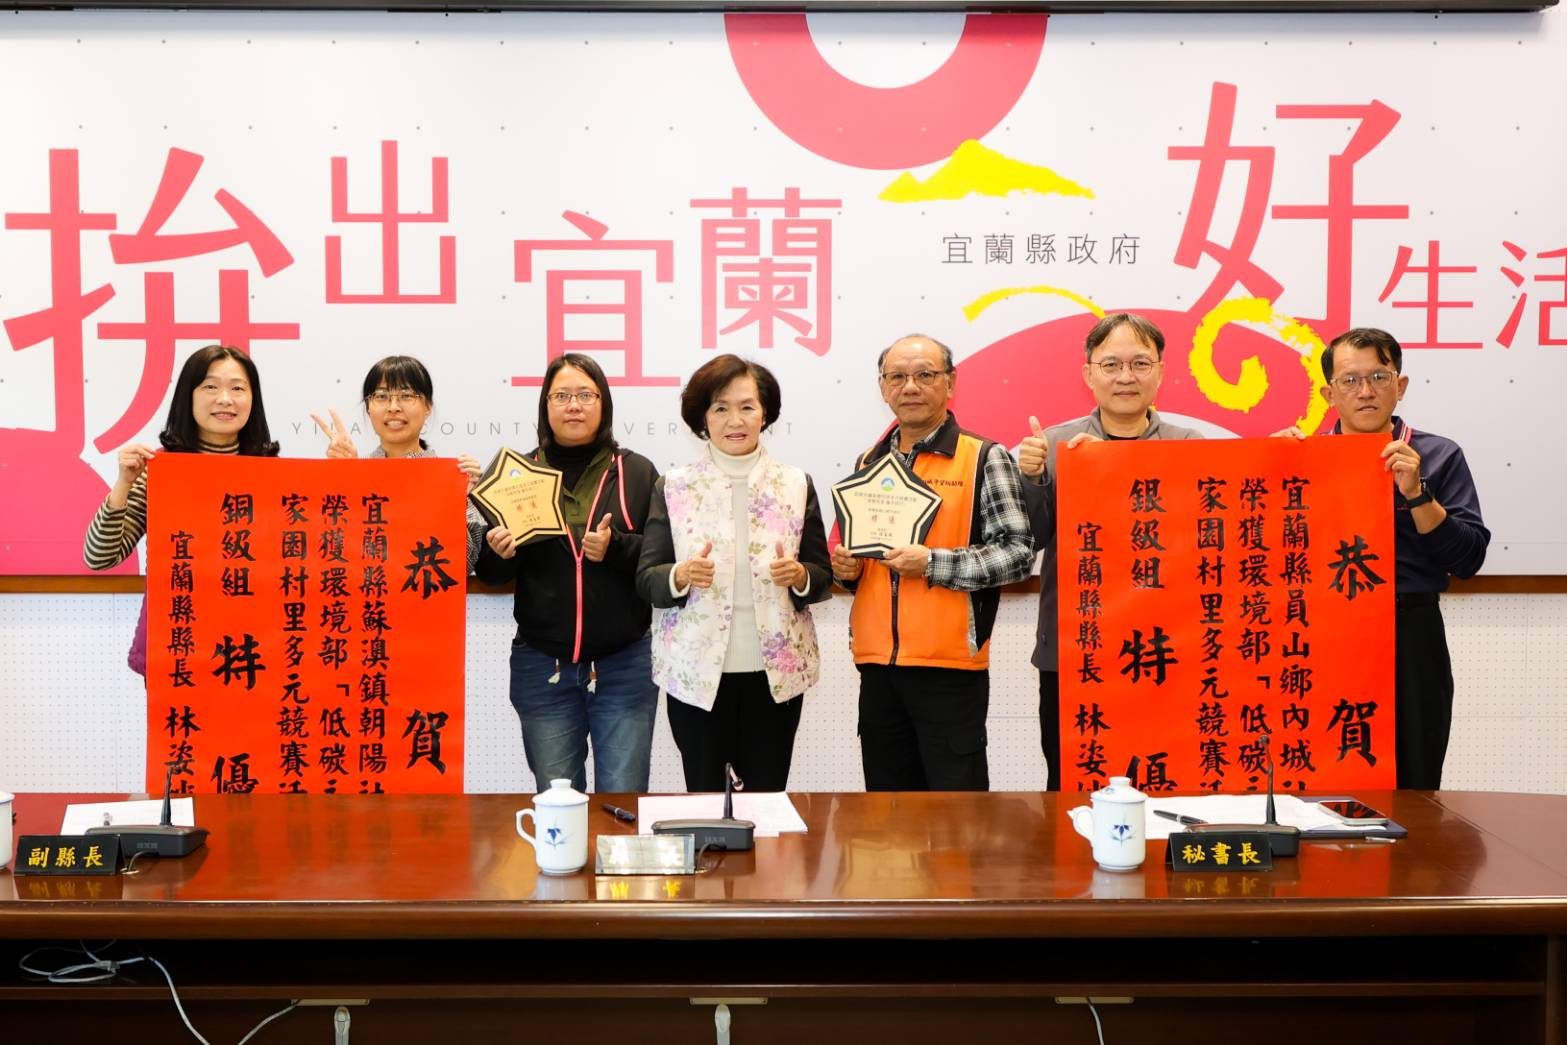 推動永續有成 本縣社區奪全國低碳競賽特優 - 早安台灣新聞 | Morning Taiwan News